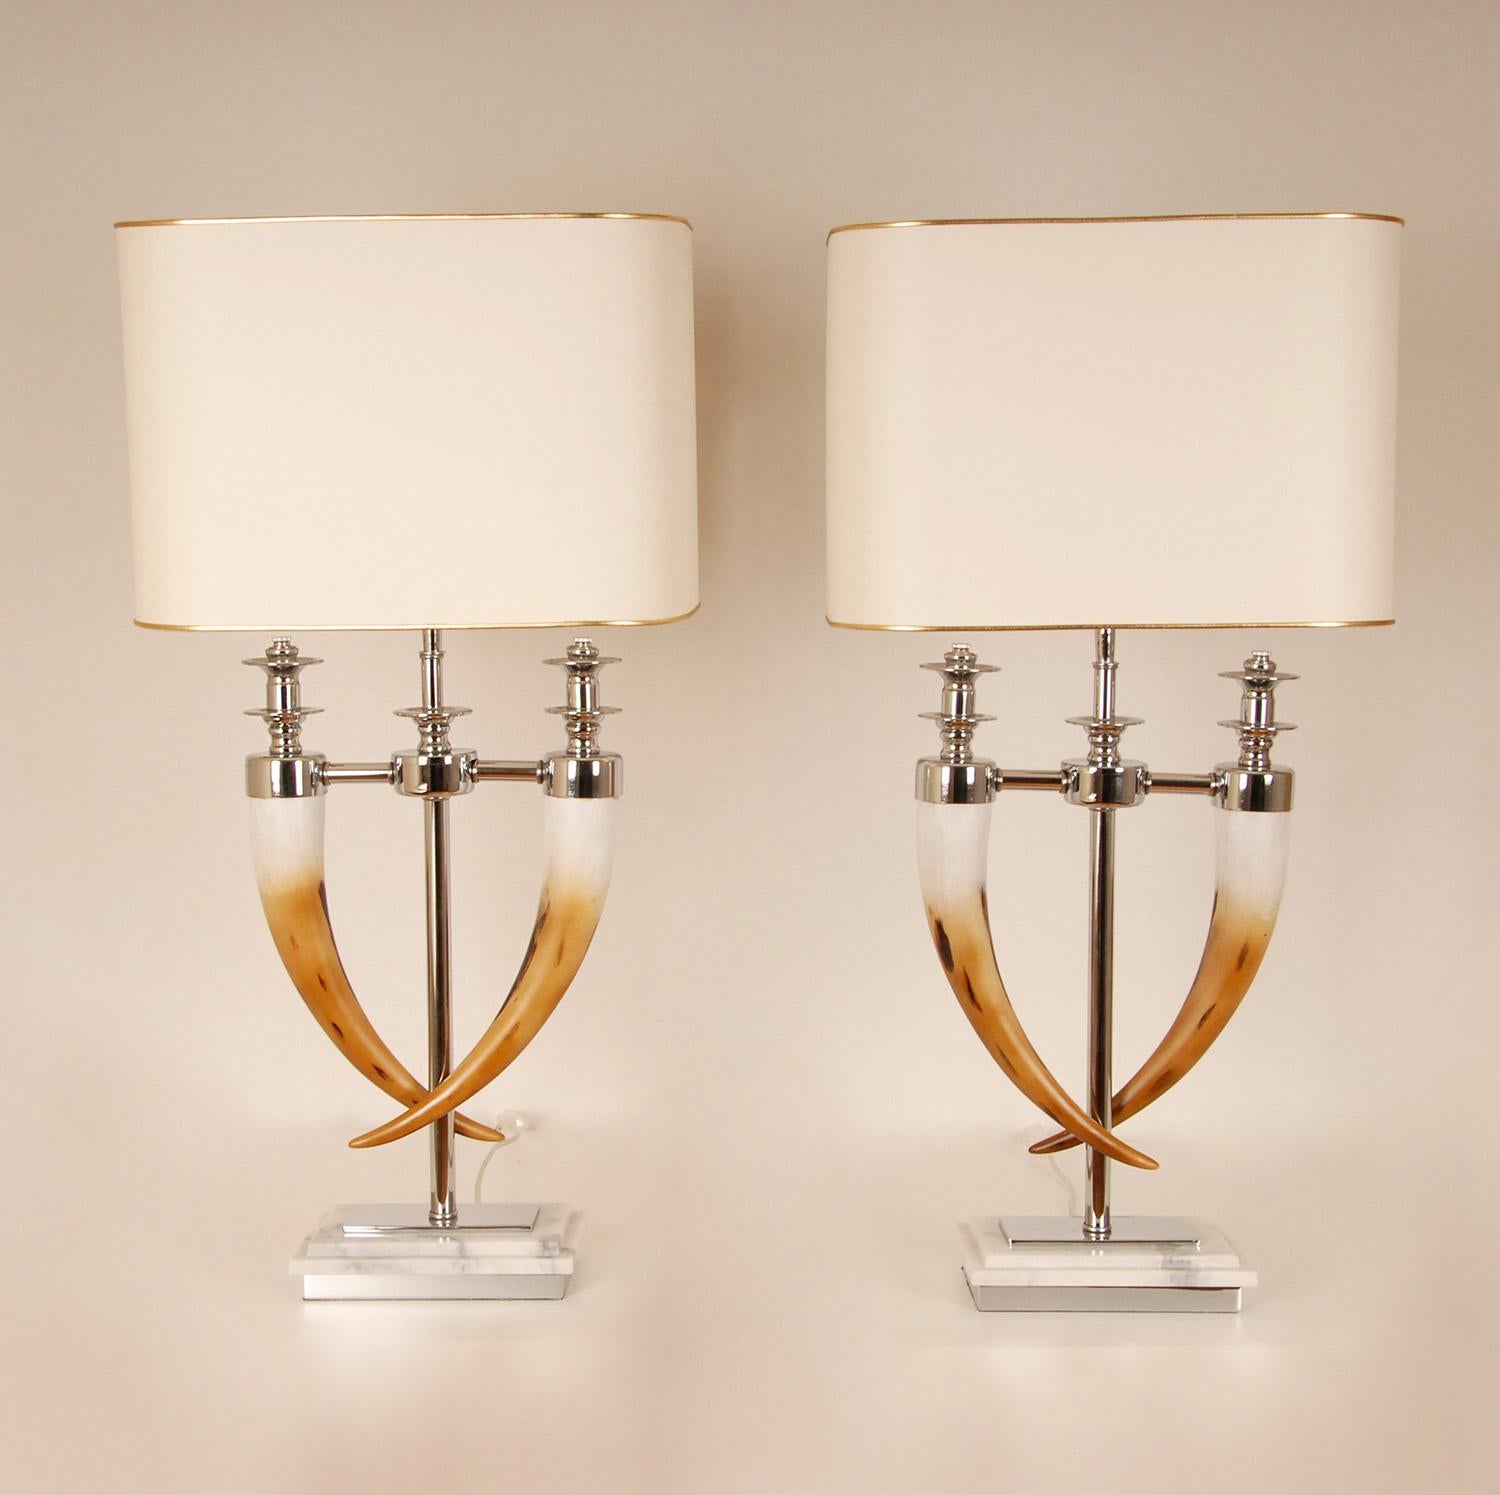 Vintage ein Paar moderne Tischlampen
Aus Chrom, 2 künstliche Hörner auf einem Marmorsockel
Mit goldfarbenen/weißfarbenen Lampenschirmen ( neuer Zustand )
Stil:  Landhausstil, Modern, Amerikanisch, Vintage
Design/One: In Anlehnung an die Firma